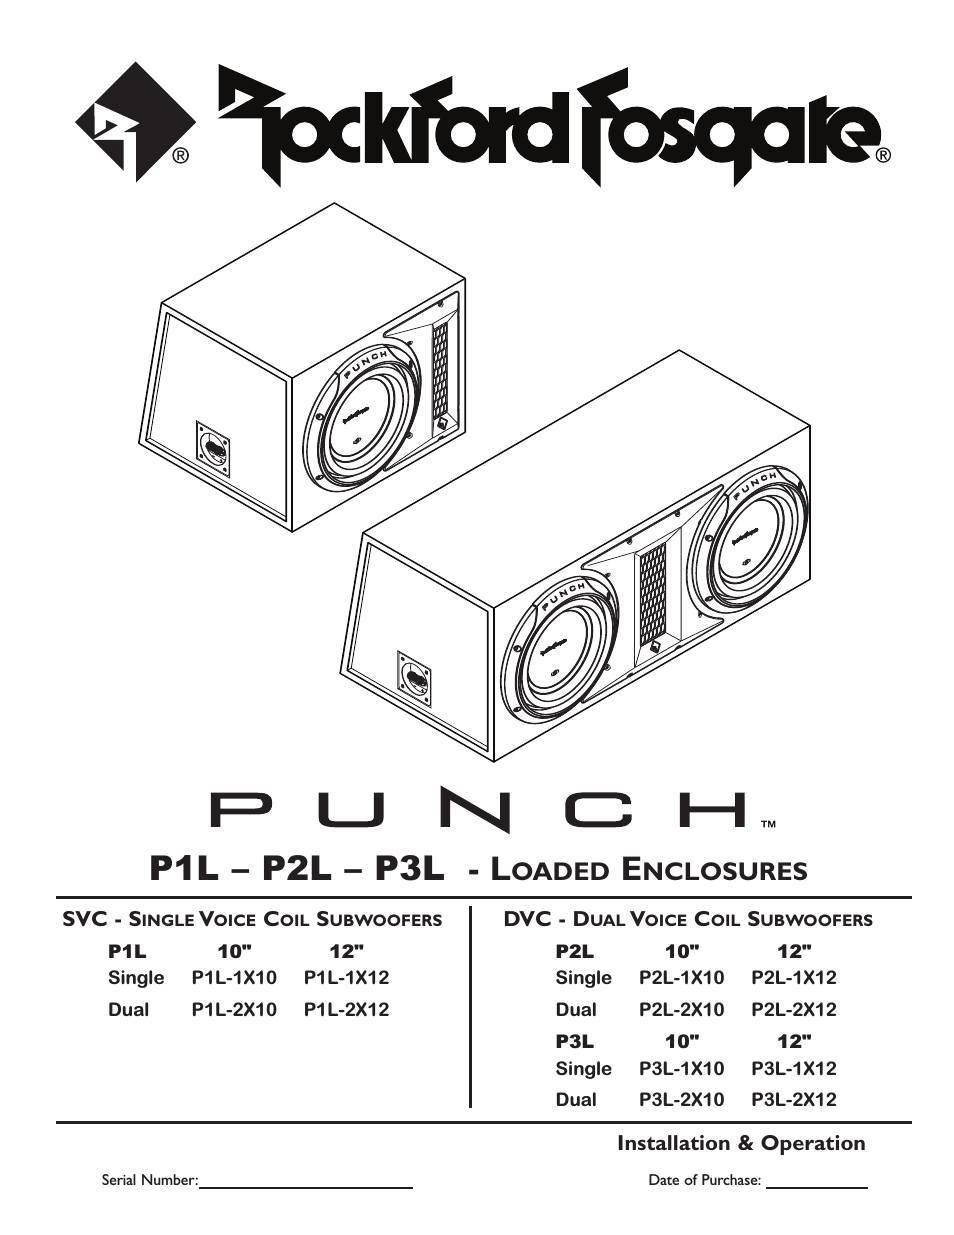 Punch P1L-2X10